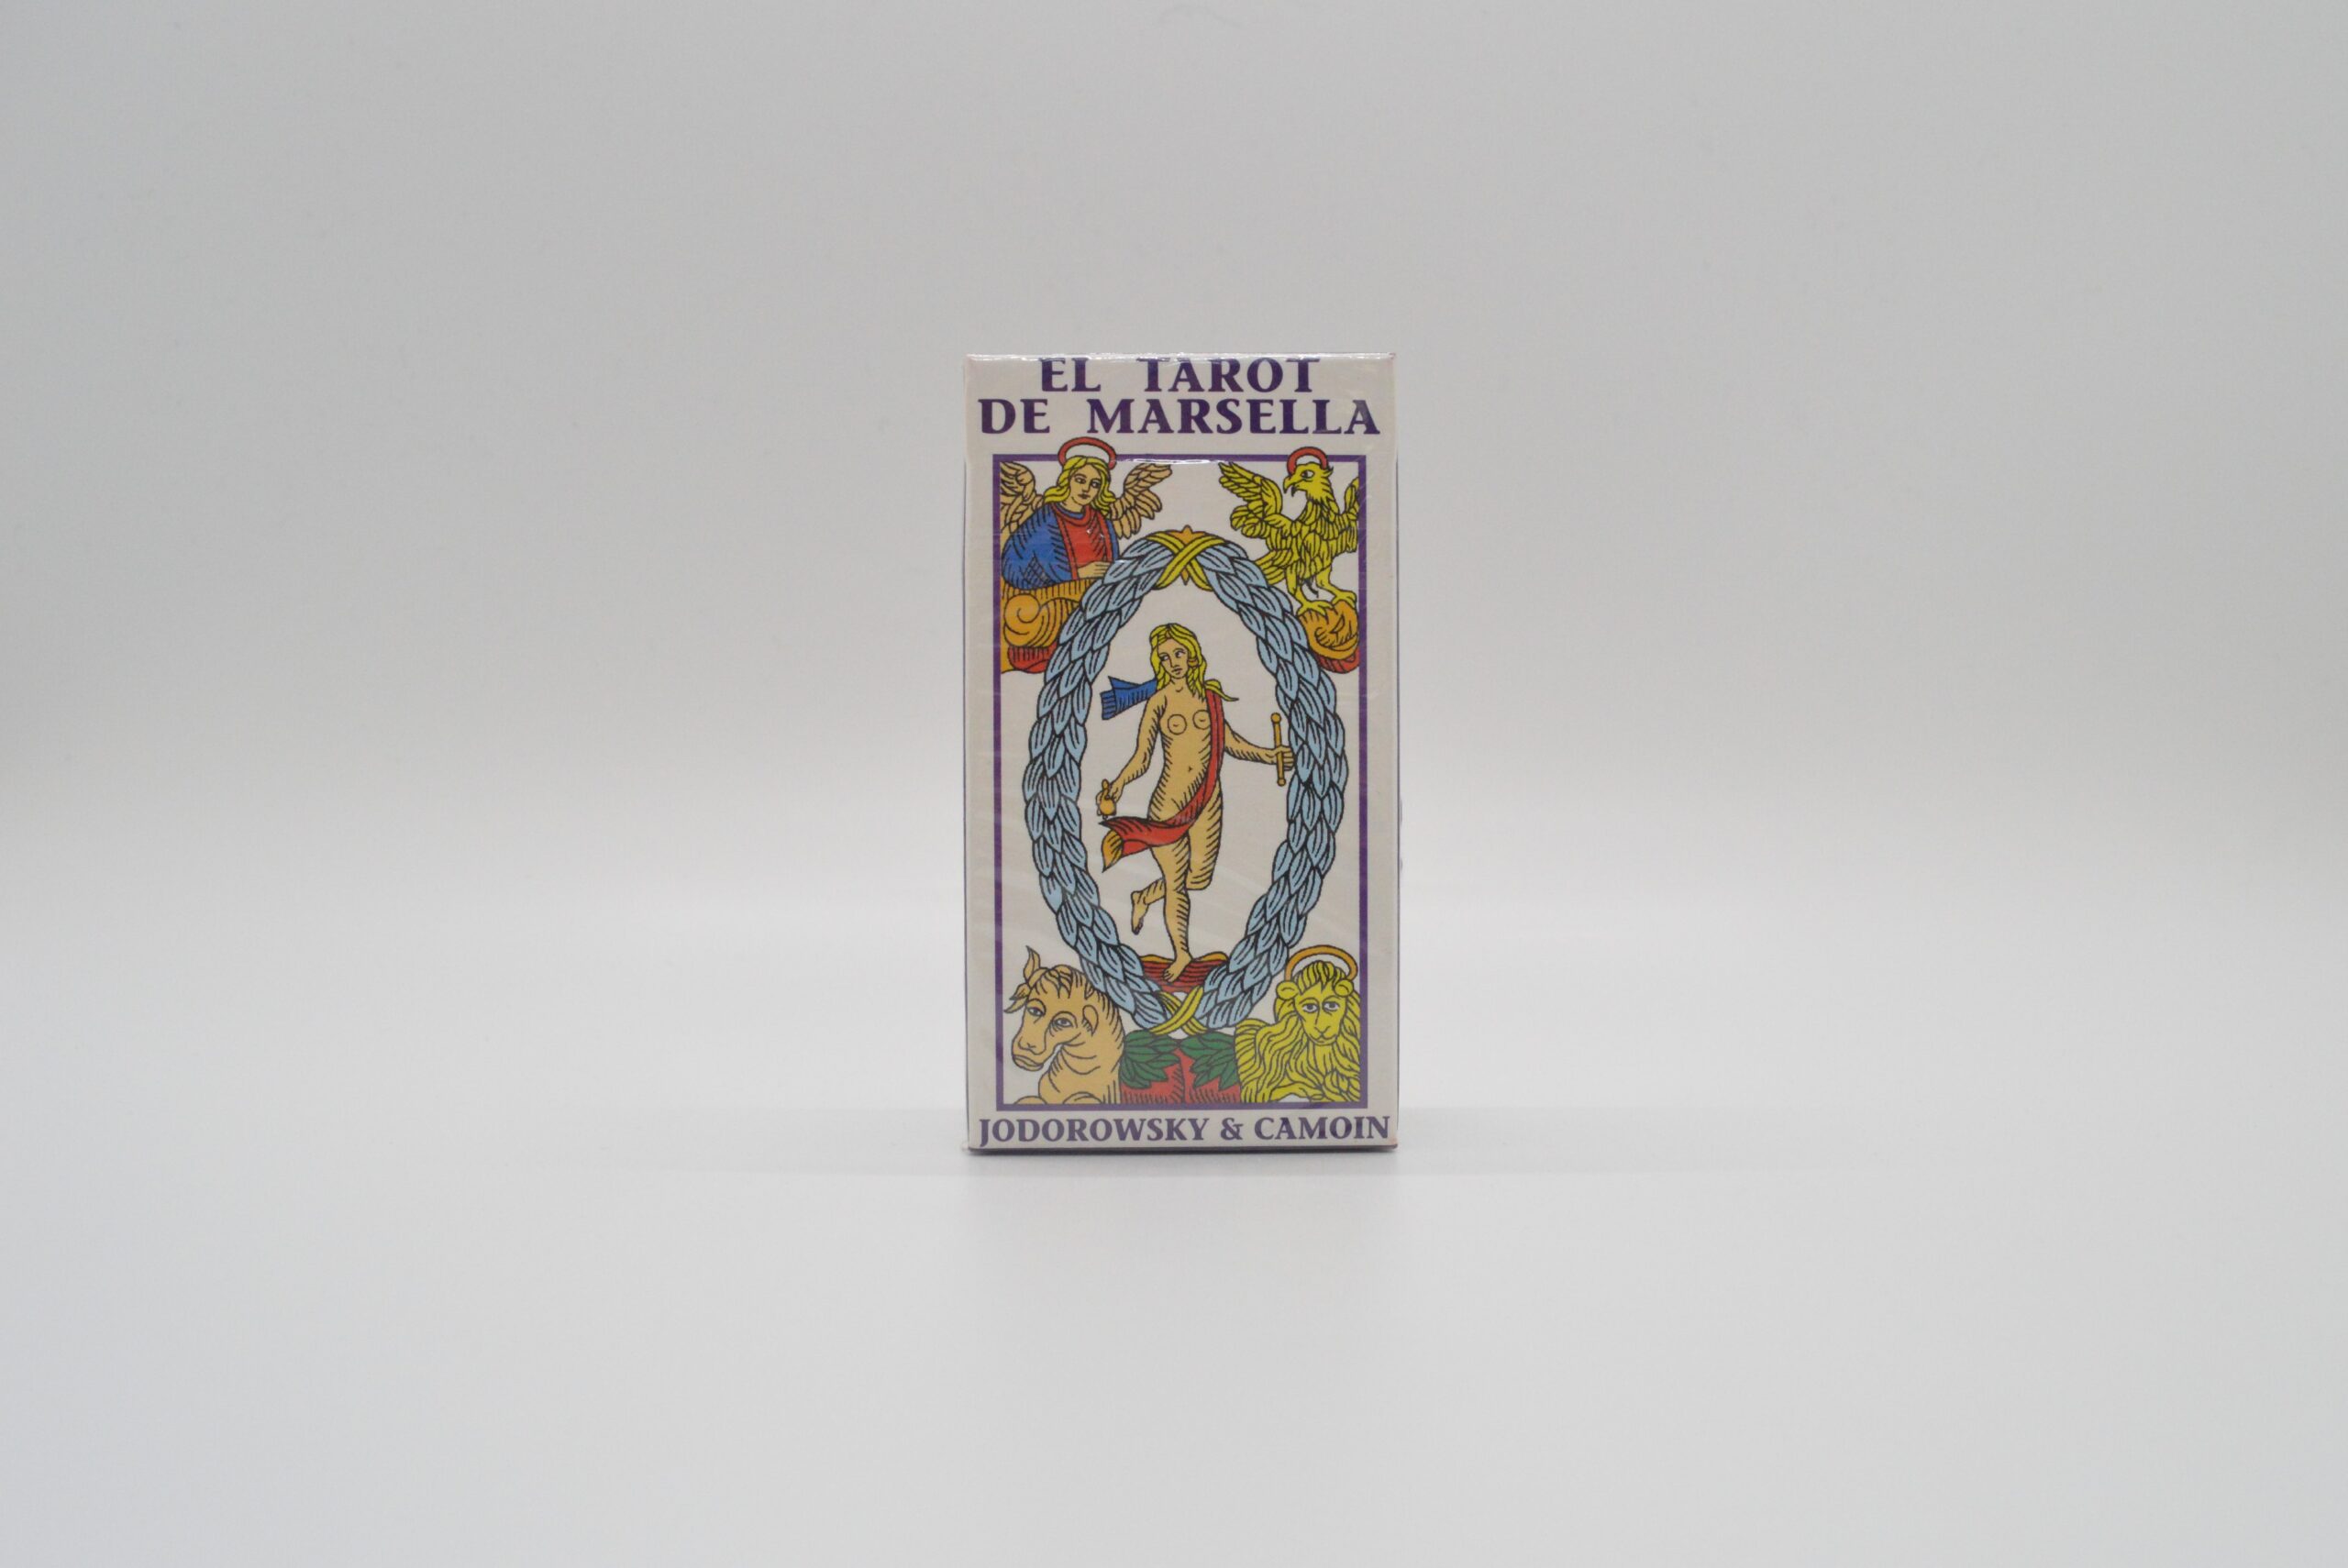 Alejandro Jodorowsky - 𝐄𝐒𝐂𝐔𝐄𝐋𝐀 𝐆𝐑𝐀𝐓𝐔𝐈𝐓𝐀 𝐃𝐄 𝐓𝐀𝐑𝐎𝐓  𝐈𝐍𝐈𝐂𝐈𝐀𝐓𝐈𝐂𝐎 BASES DEL TAROT DE MARSELLA (III) El Tarot de Marsella  fue lanzado al mundo antes del año 1.4